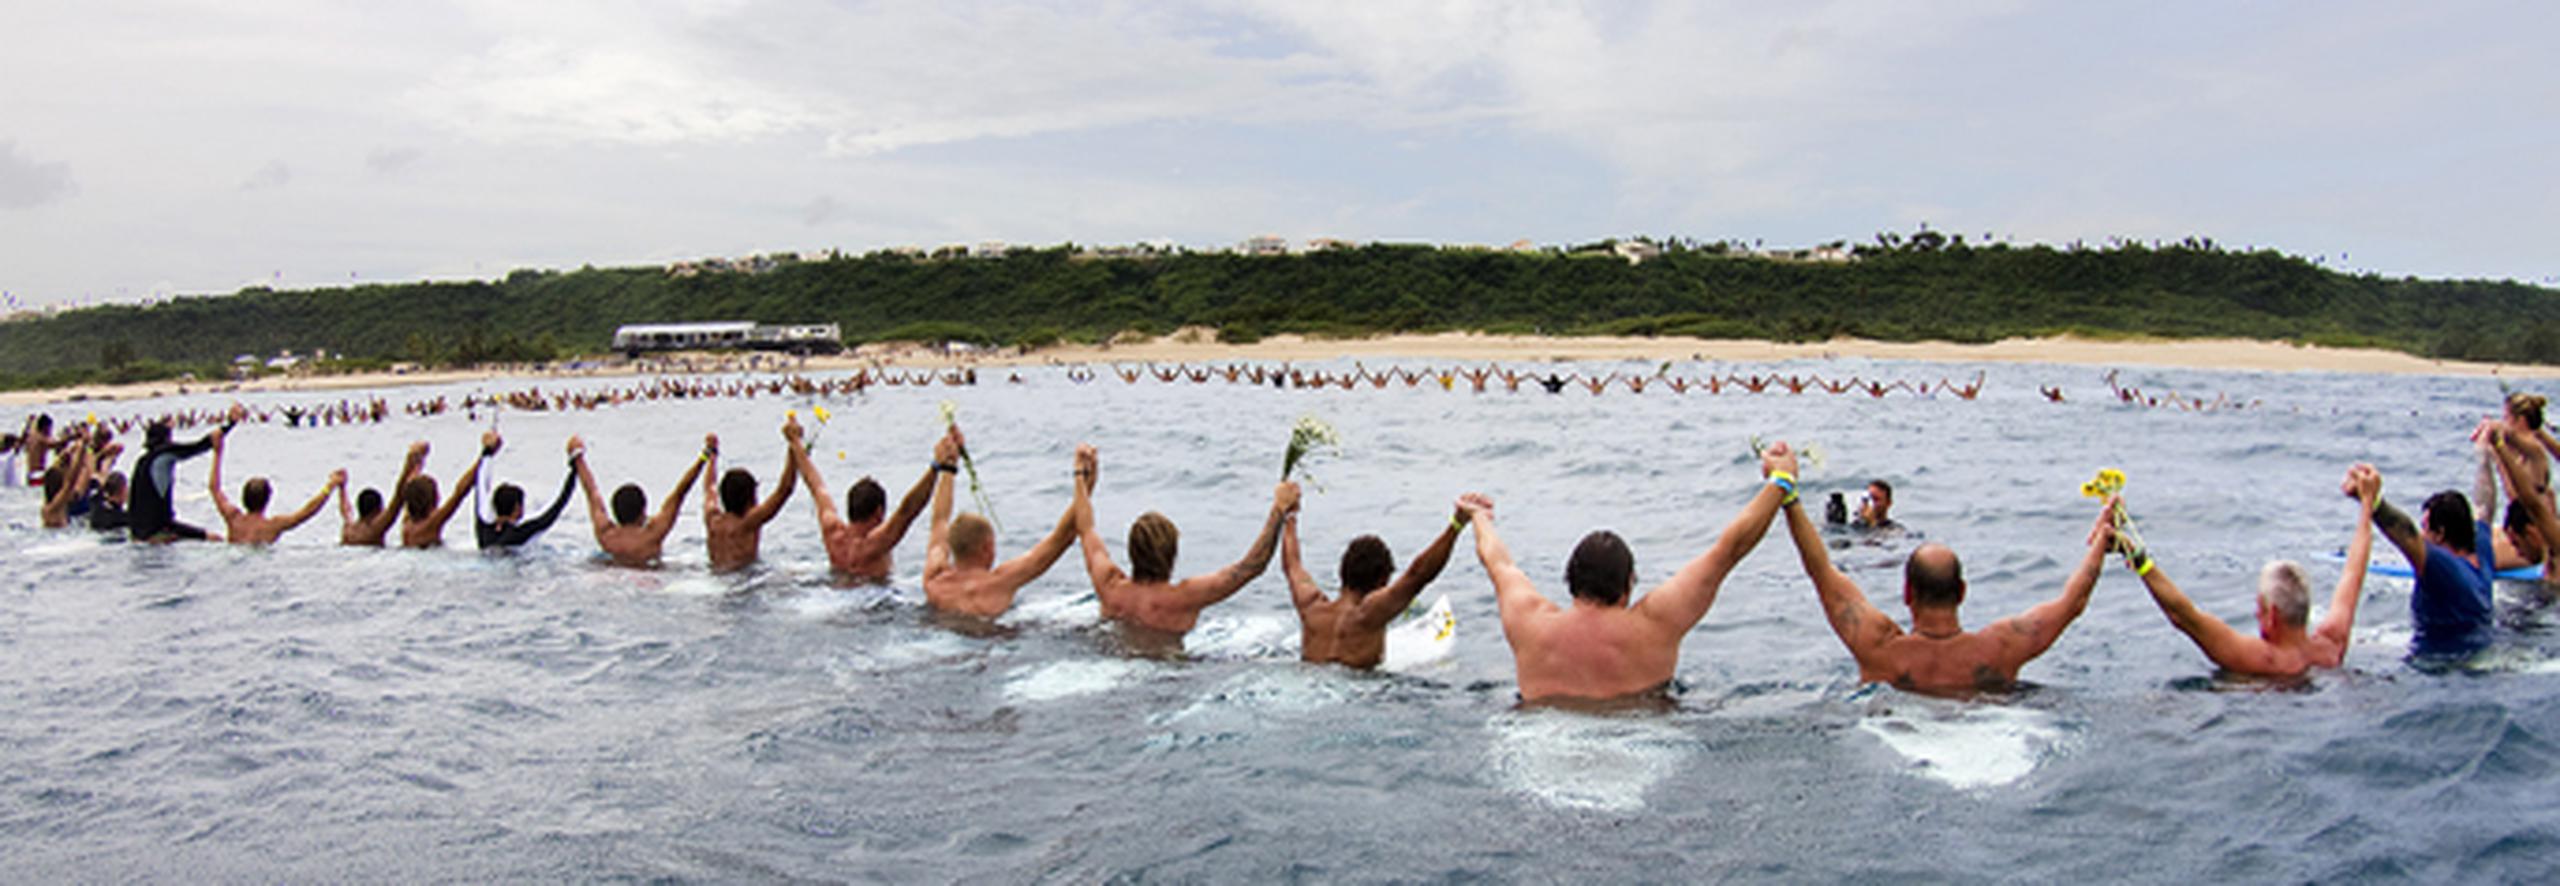 Decenas de surfers levantaron sus brazos durante un acto de recordación efectuado hoy en la playa Middles, en Isabela, en memoria de Andy Irons. Muchos de ellos cargaron ramos de flores que fueron lanzadas al mar en homenaje al atleta.   (Suministrada ASP/ Cestari)